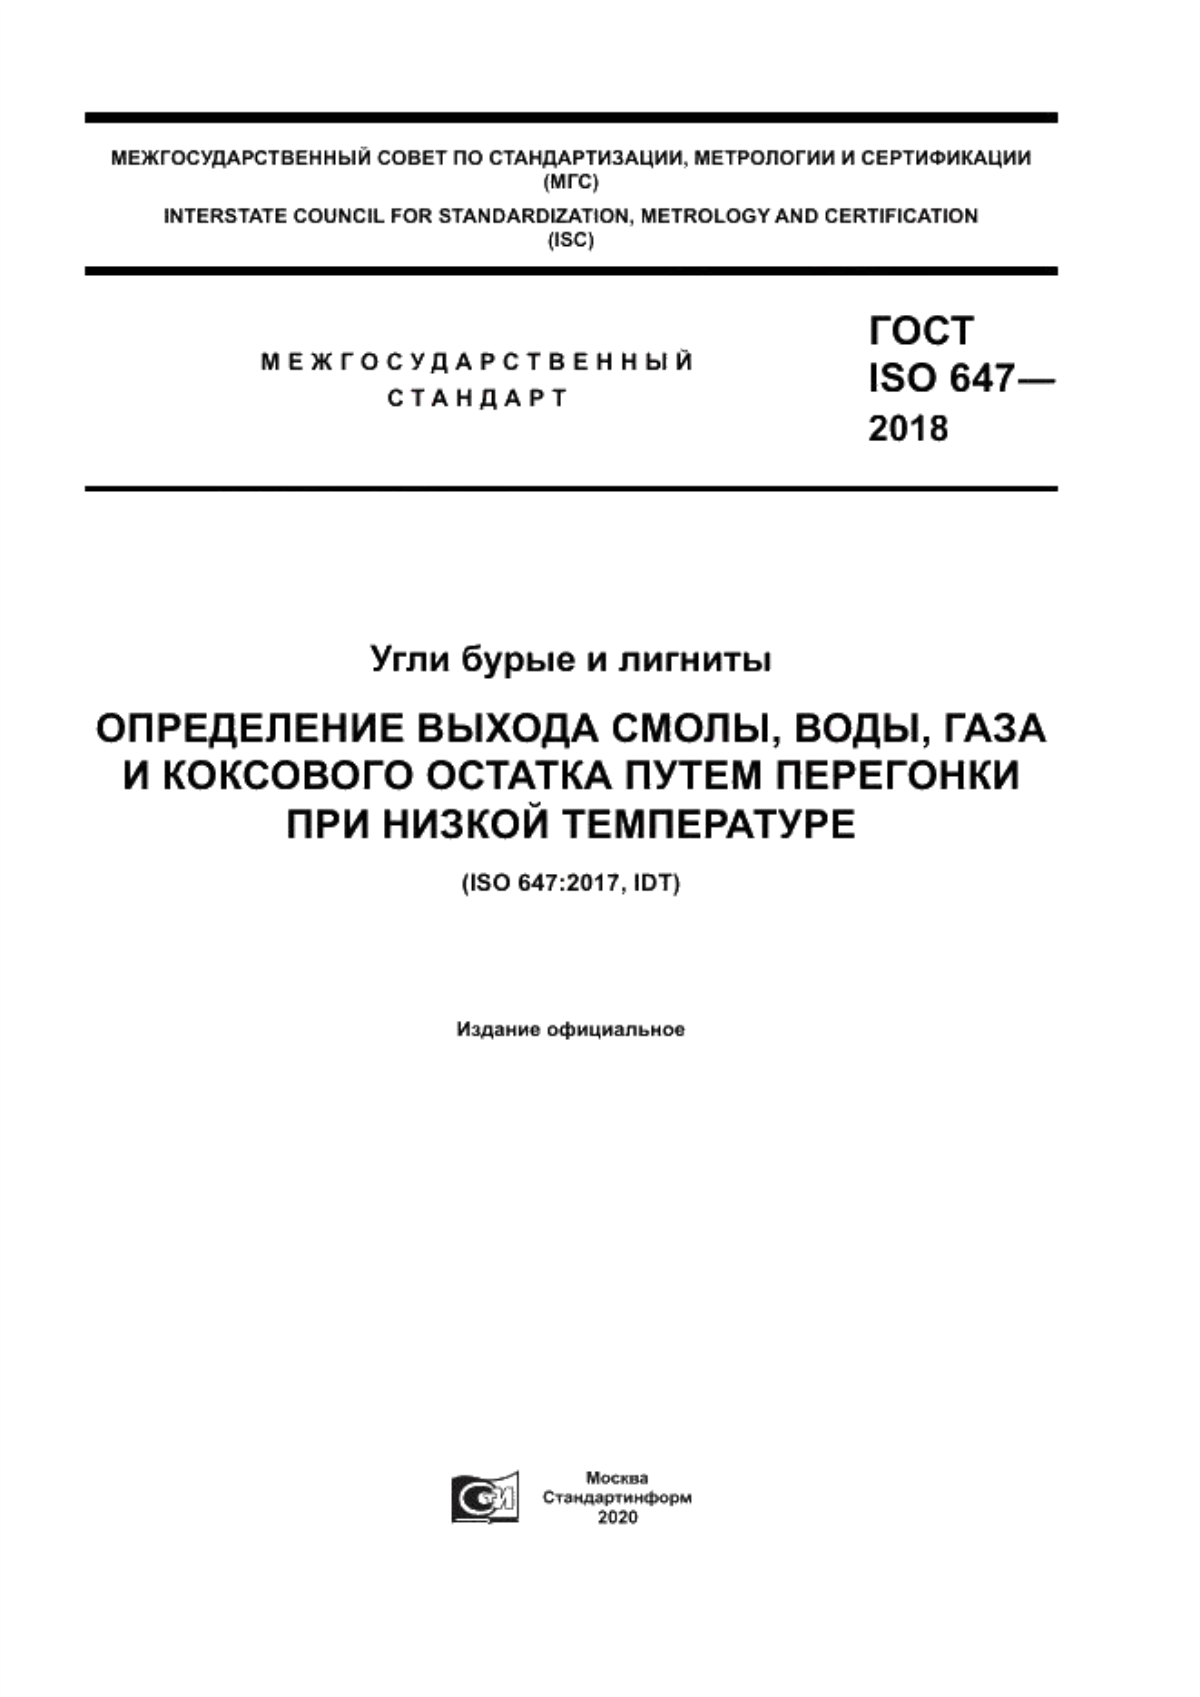 ГОСТ ISO 647-2018 Угли бурые и лигниты. Определение выхода смолы, воды, газа и коксового остатка путем перегонки при низкой температуре